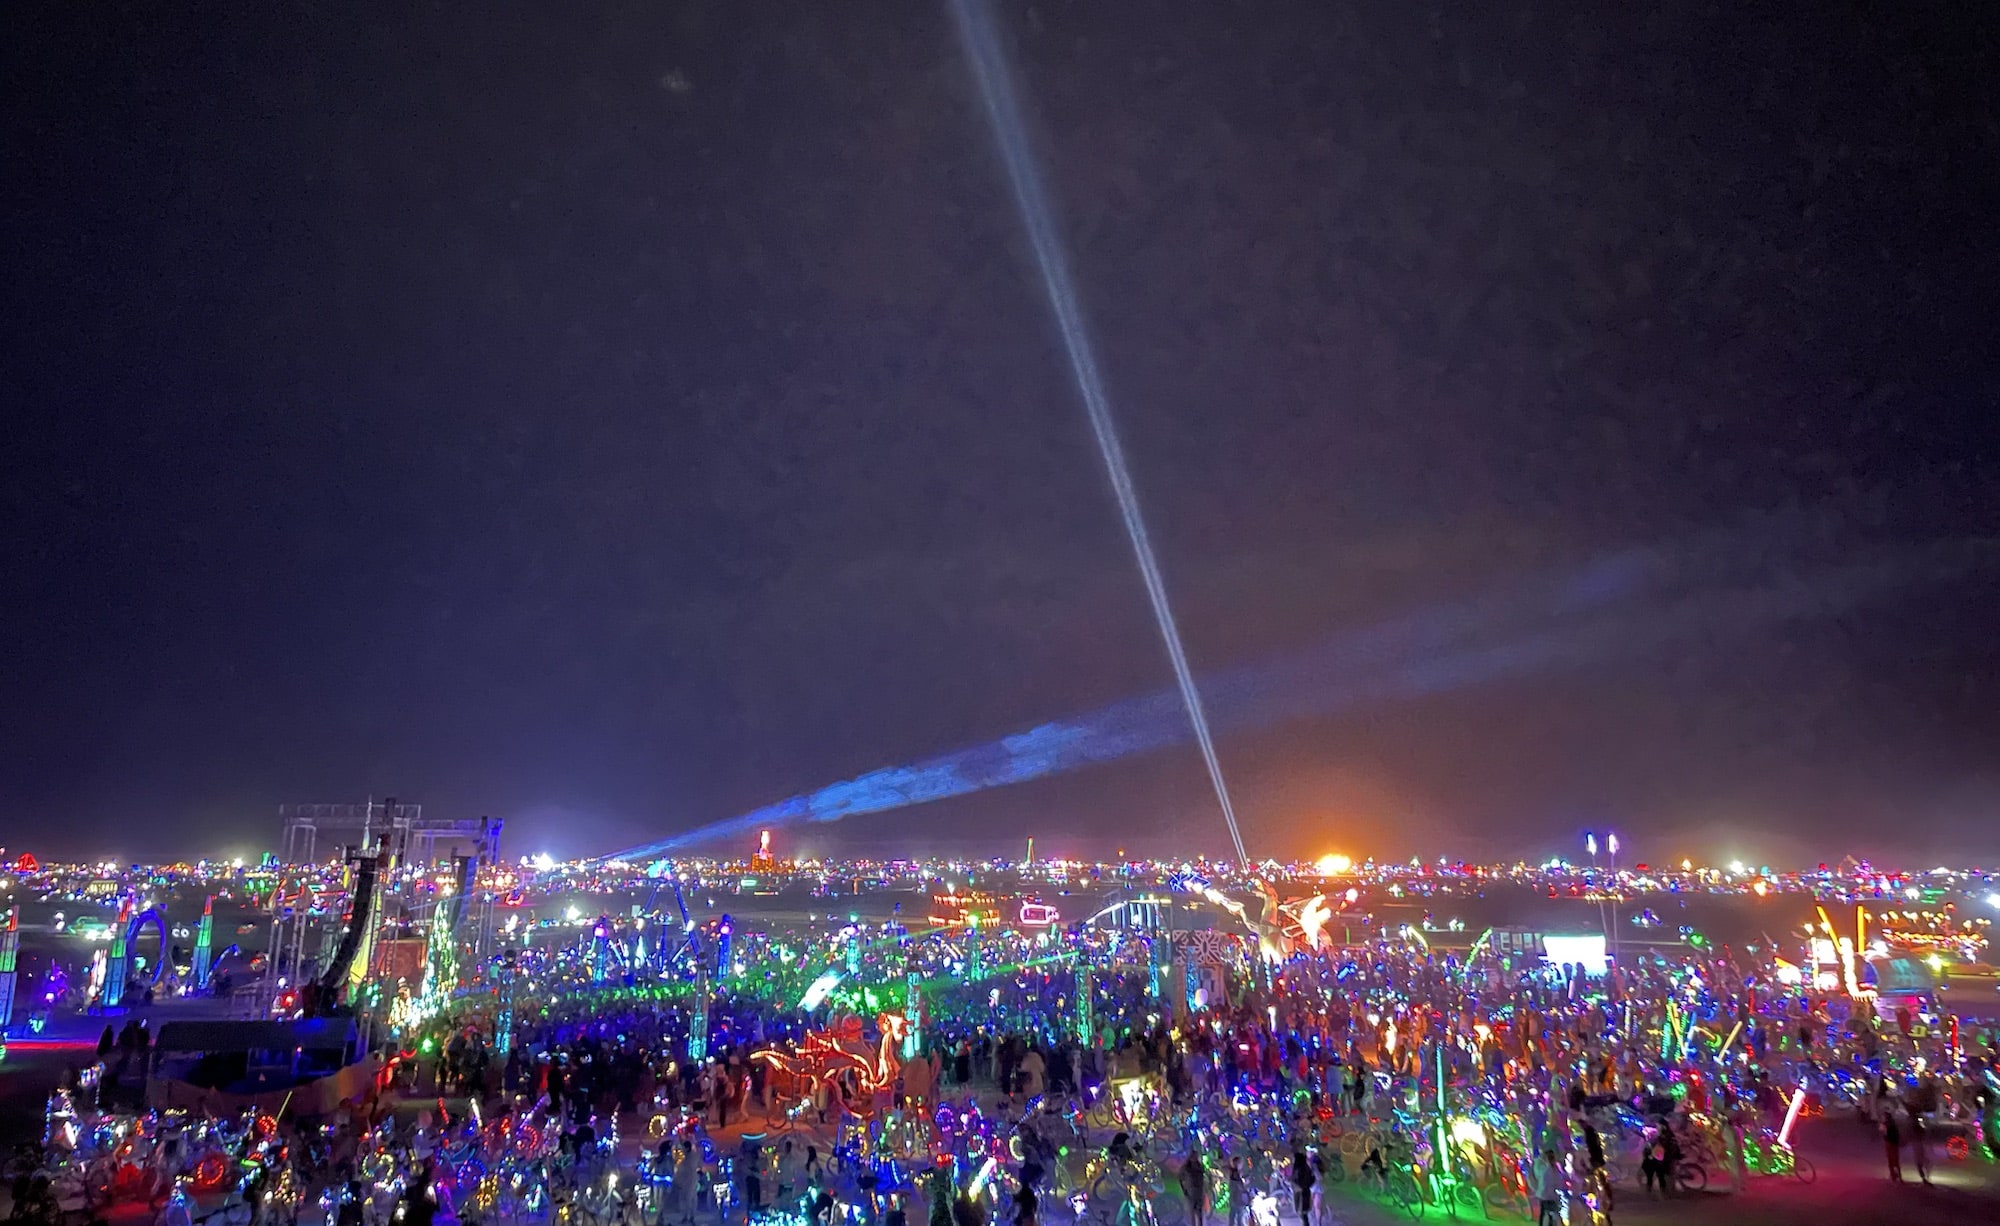 A giant party at night at Burning Man